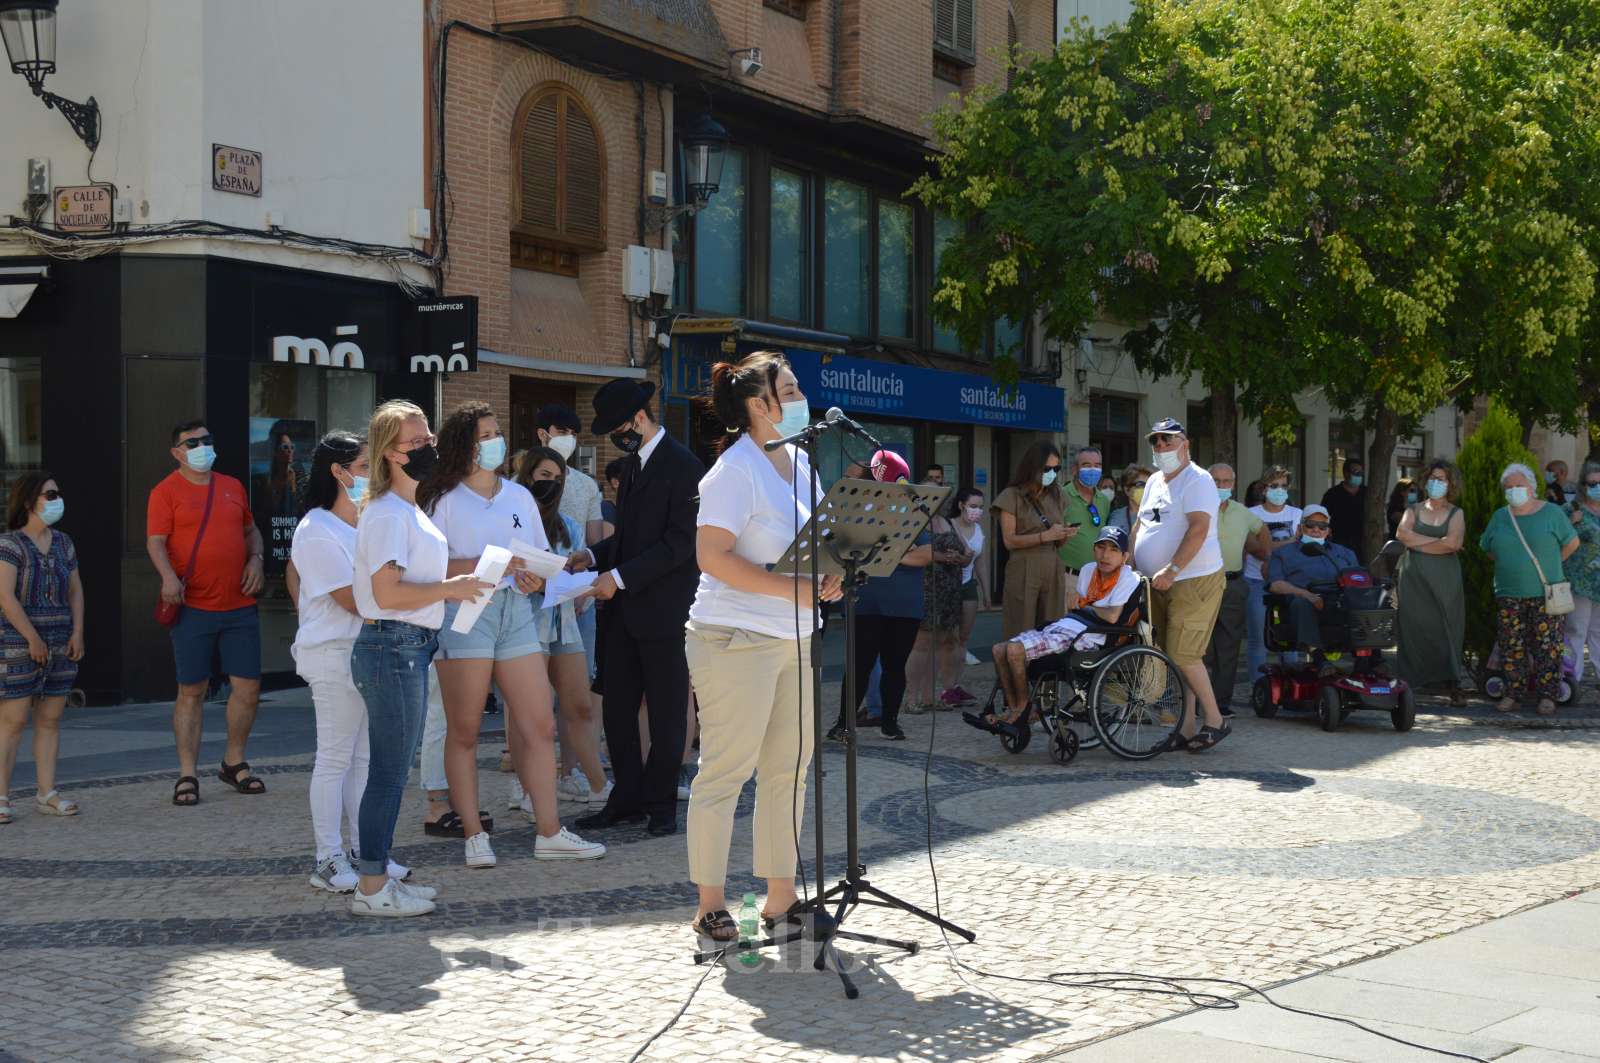 Cientos de personas piden en Tomelloso justicia para Emous, Gonzalo y Marta